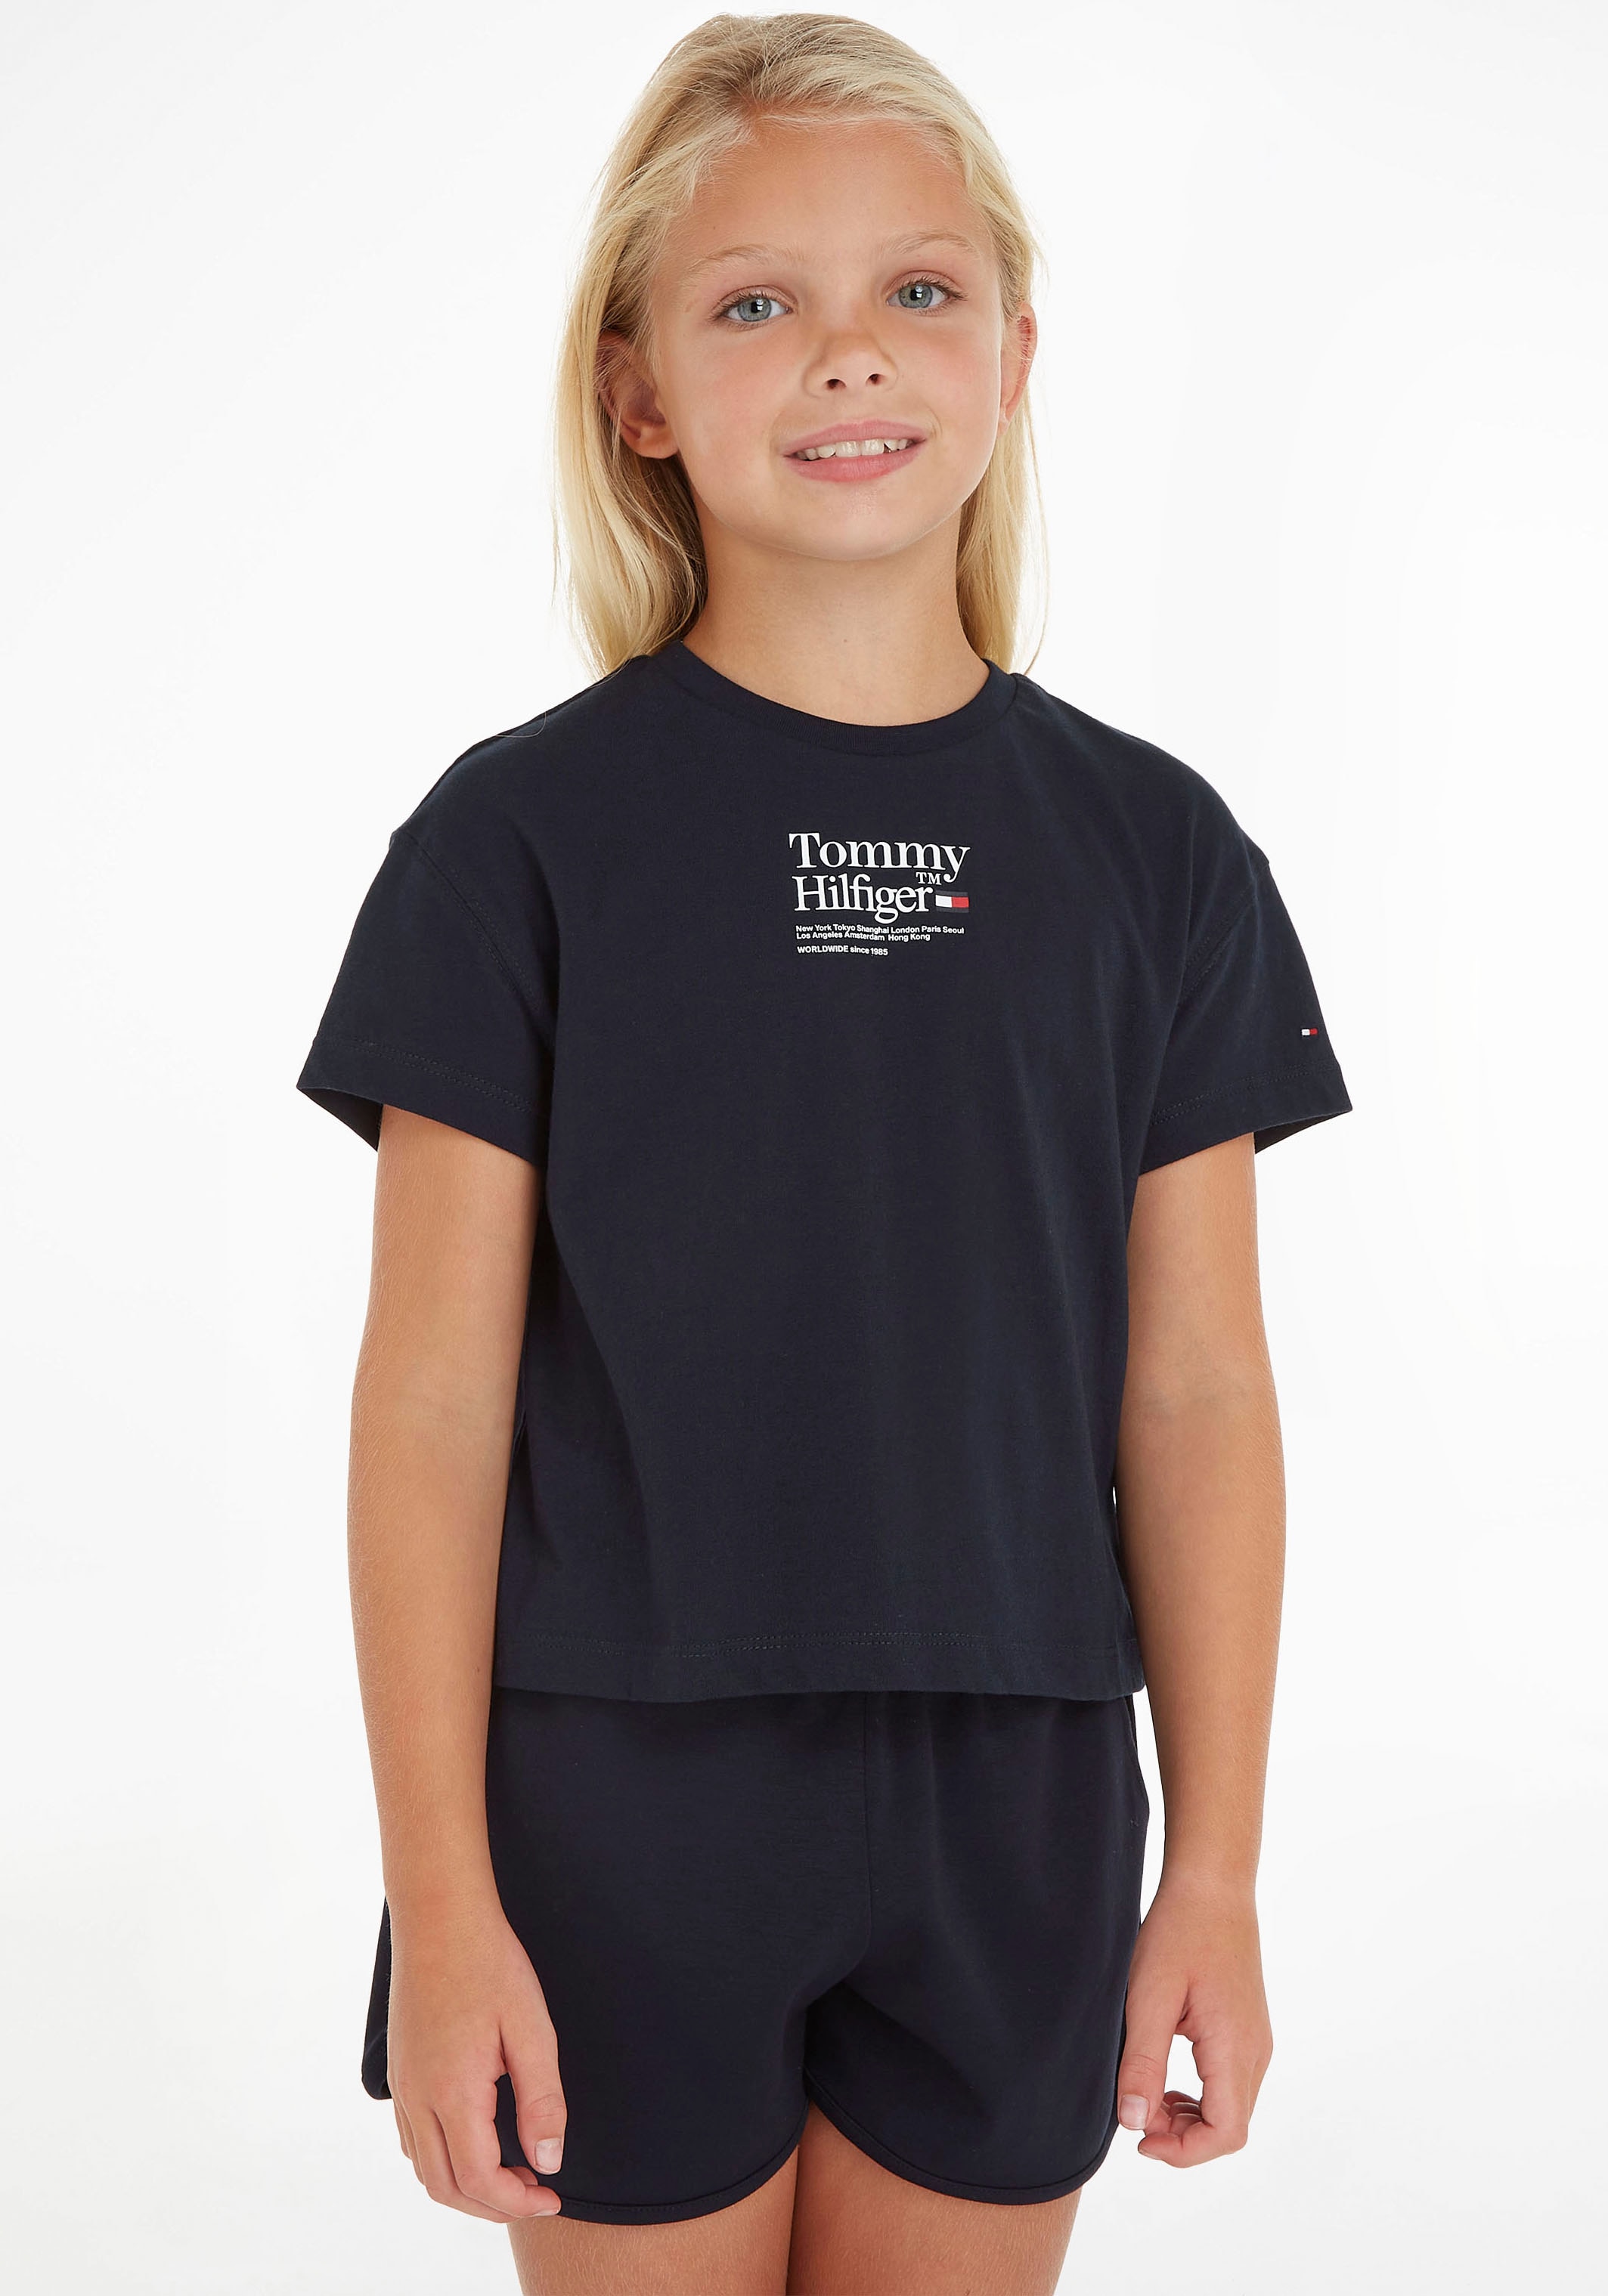 Tommy Hilfiger T-Shirt im TEE TOMMY mit Ärmeln Online Shop OTTO S/S«, kurzen »TIMELESS